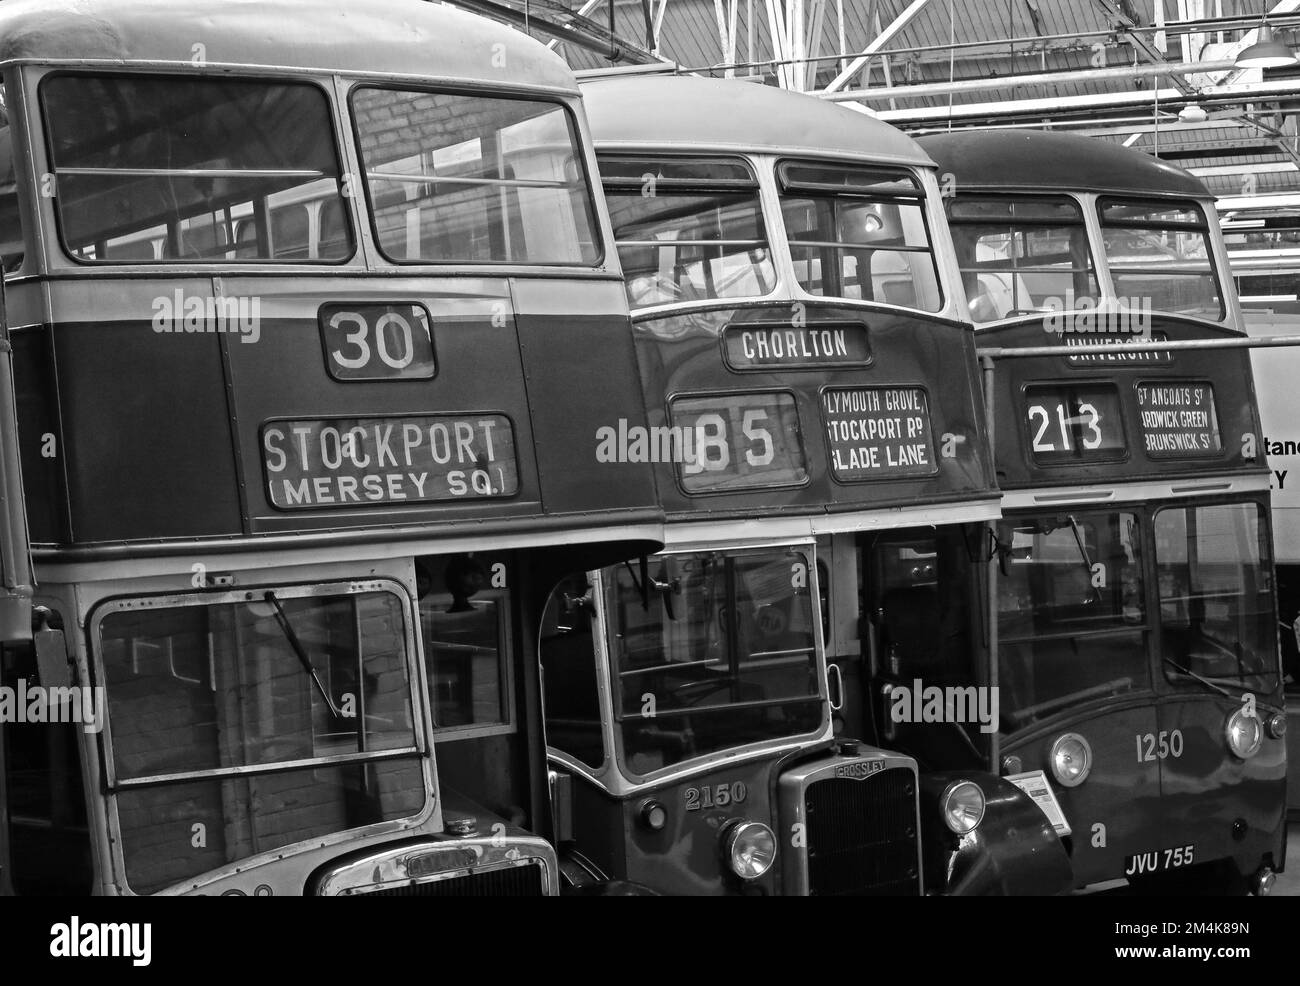 Autobus historiques de Manchester dans le dépôt de Queens Road, Stockport 30, Chorlton 85, University 213, 1951 Crossley Dominion Trolley bus JVU755 Banque D'Images